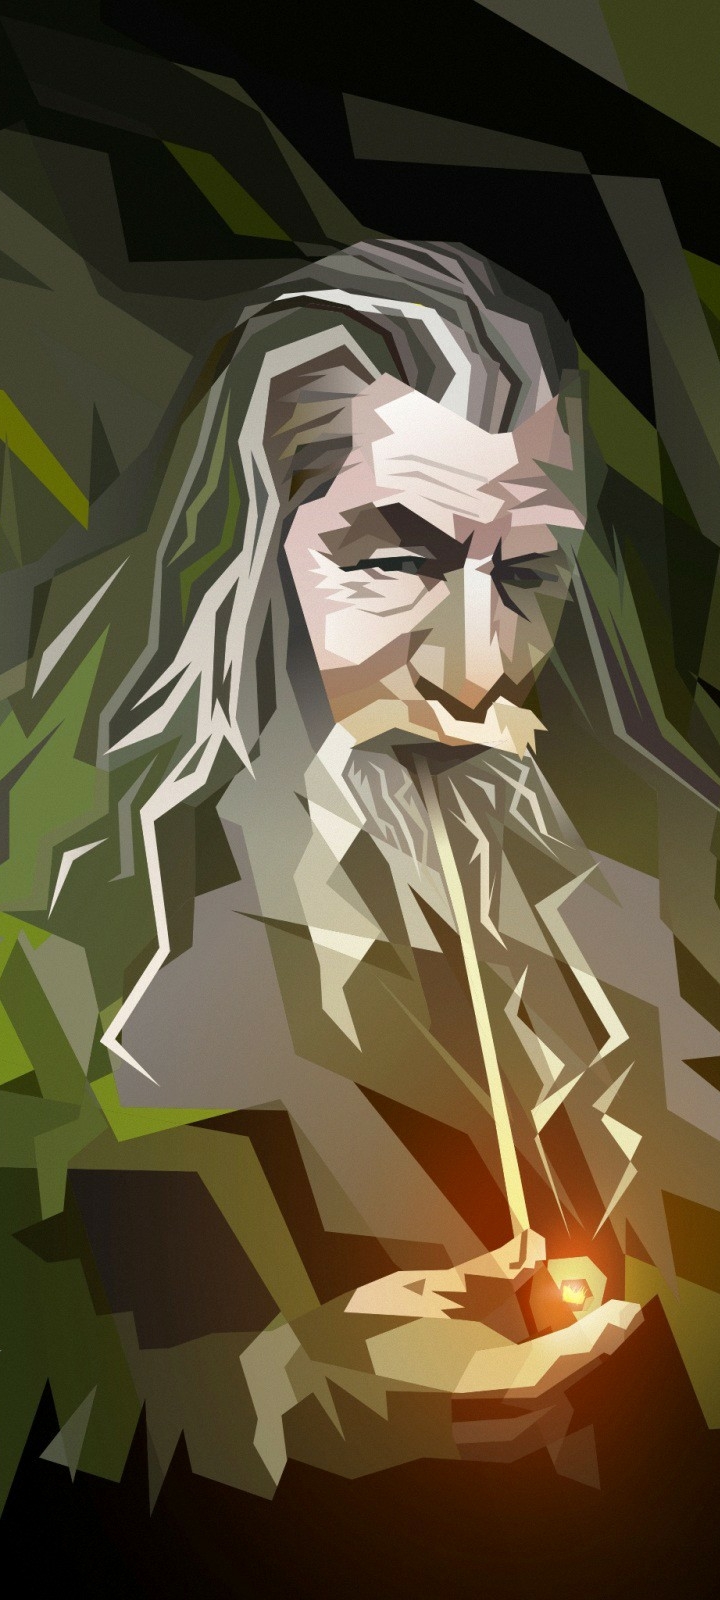 Descarga gratuita de fondo de pantalla para móvil de El Señor De Los Anillos, Películas, Gandalf, El Hobbit: Un Viaje Inesperado.